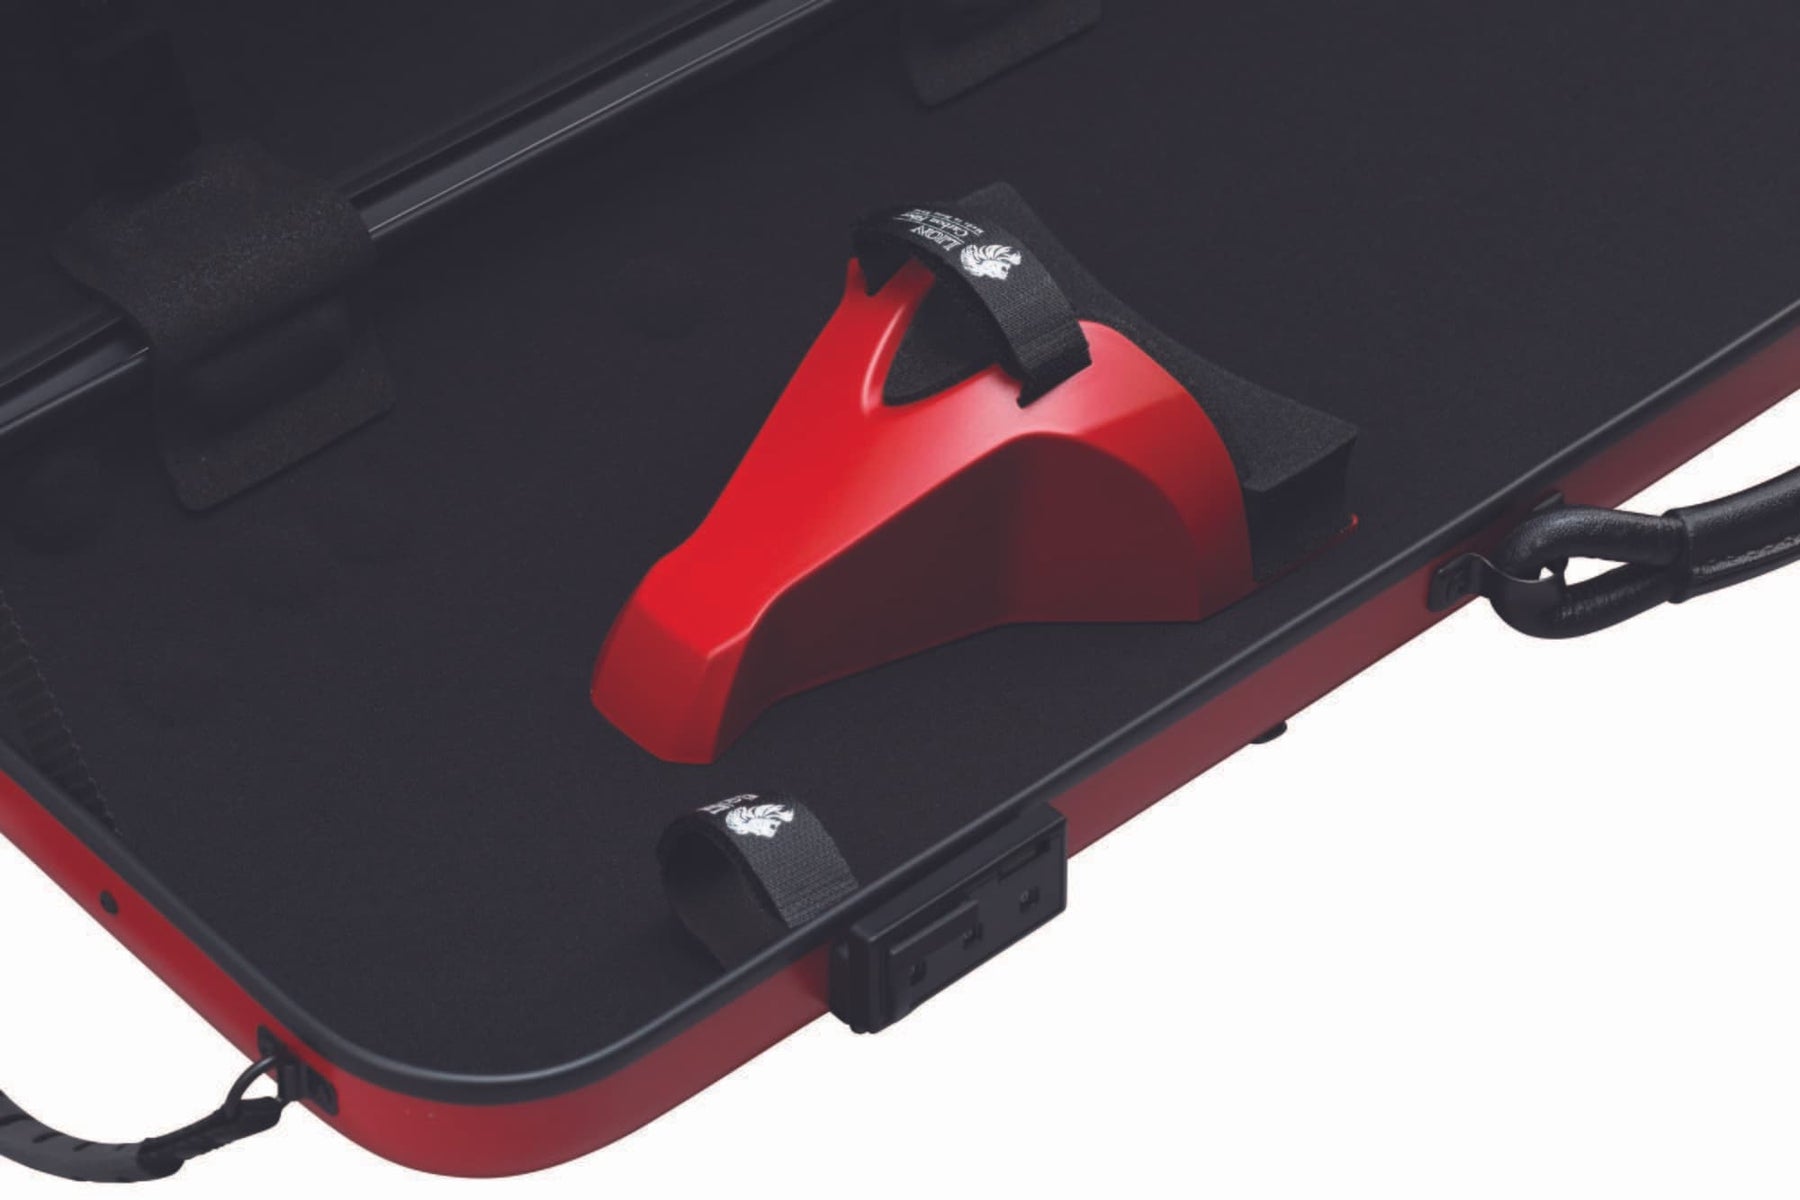 Lion Model 1800 Carbon Fiber Violin Case